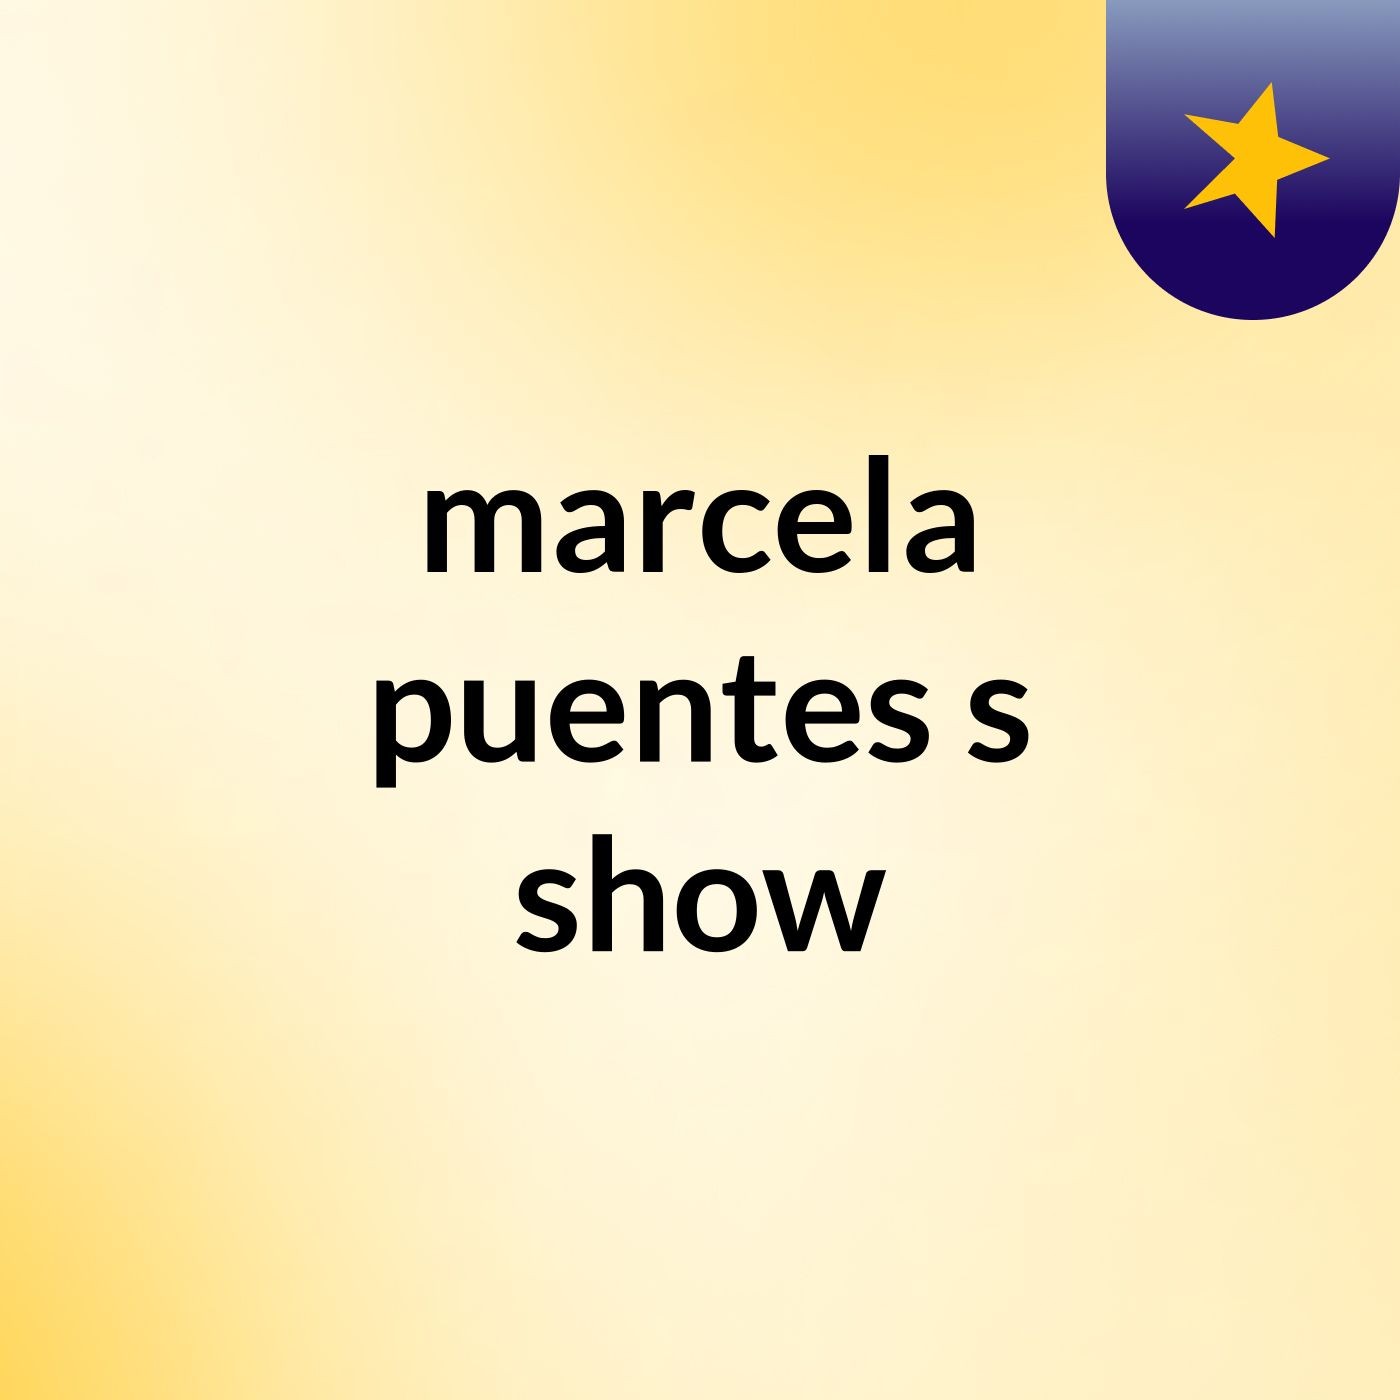 marcela puentes's show